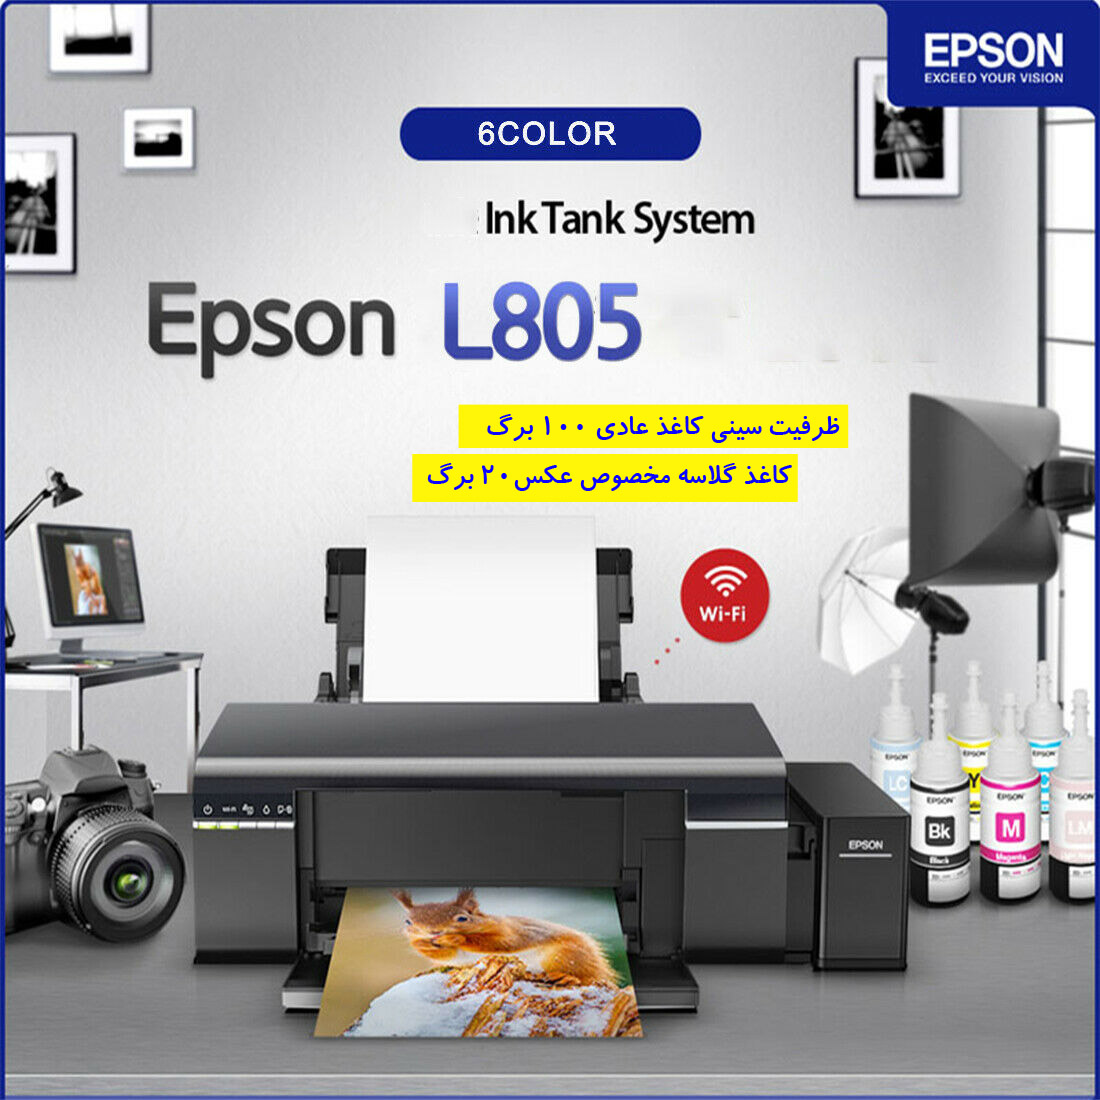 ظرفیت سینی کاغذ پرینتر جوهرافشان epson l805 printer